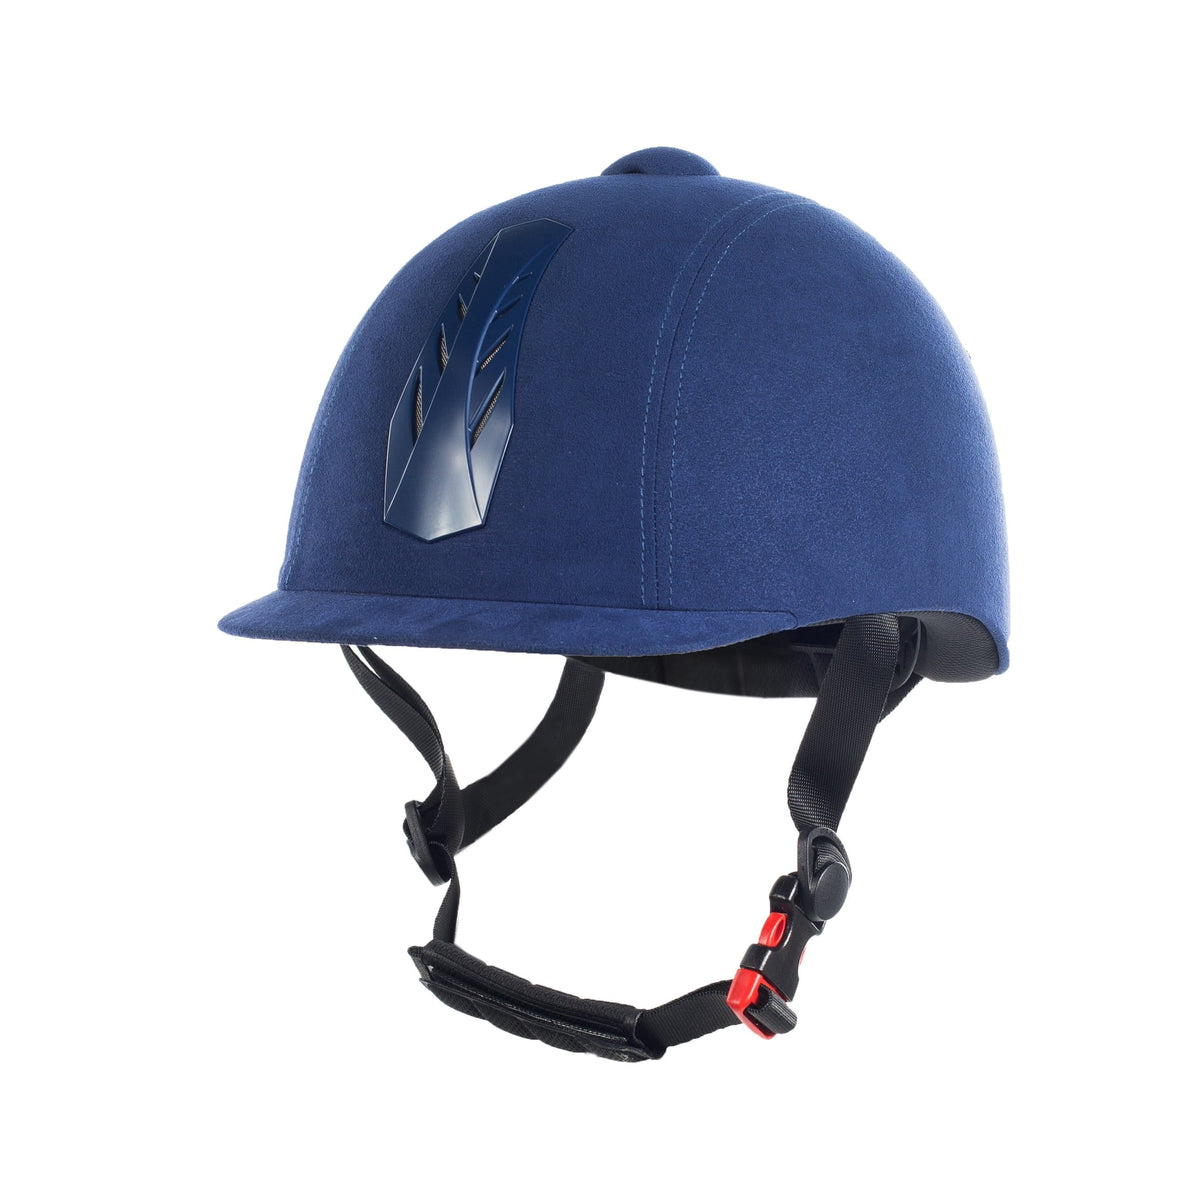 HORZE HELMETS & SAFETY 52-54 / NAVY Horze Triton Helmet